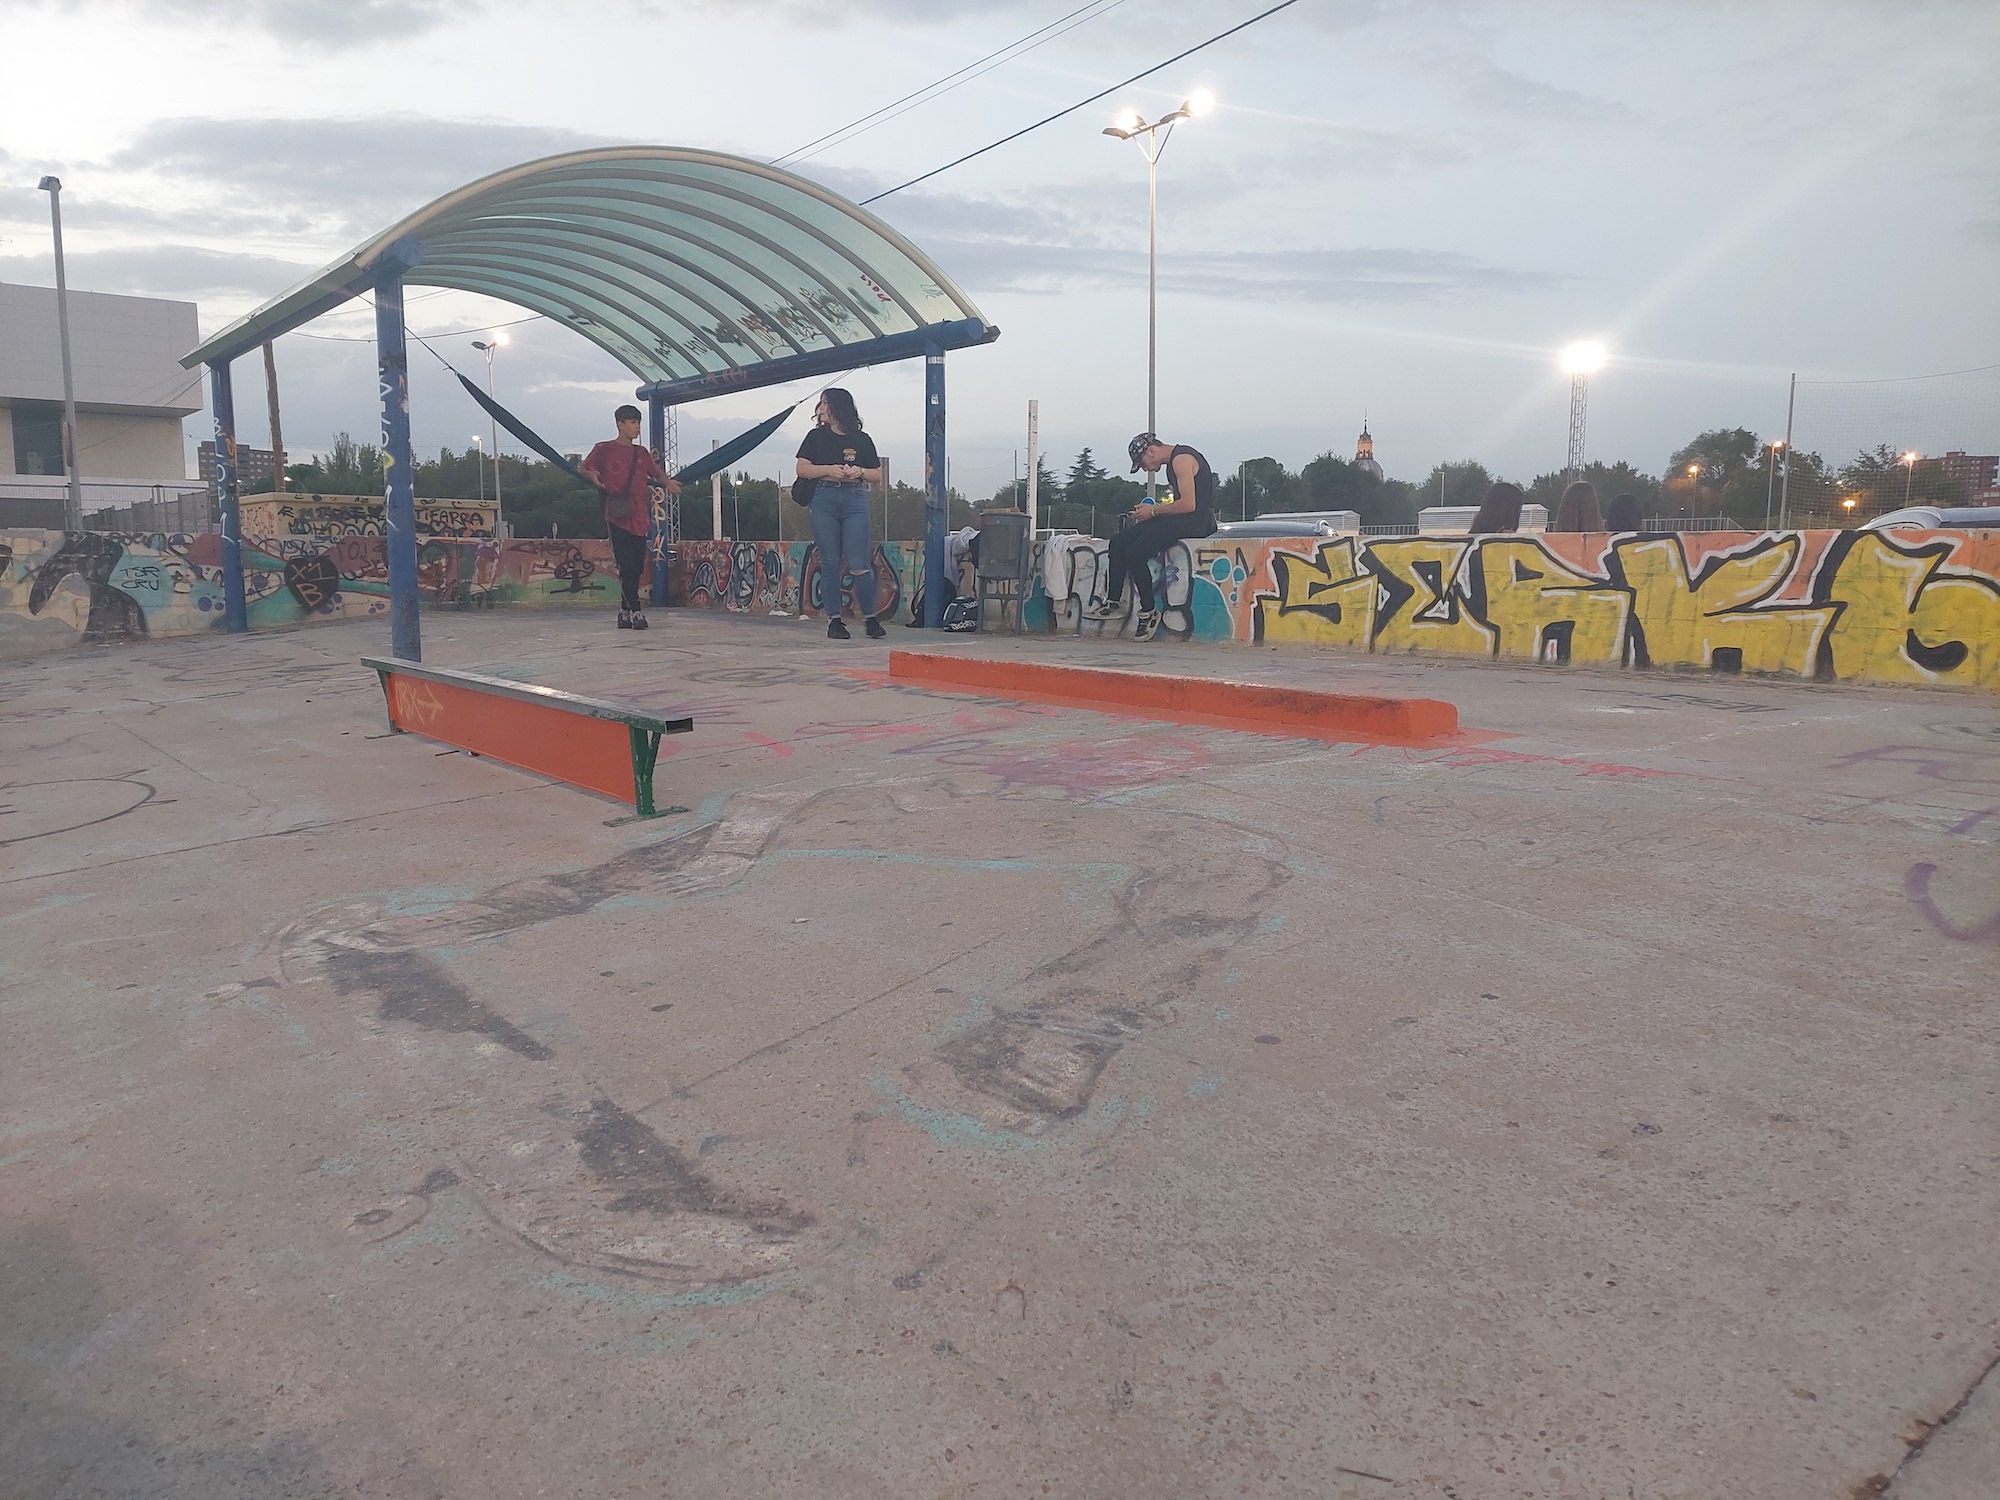 Talavera skatepark